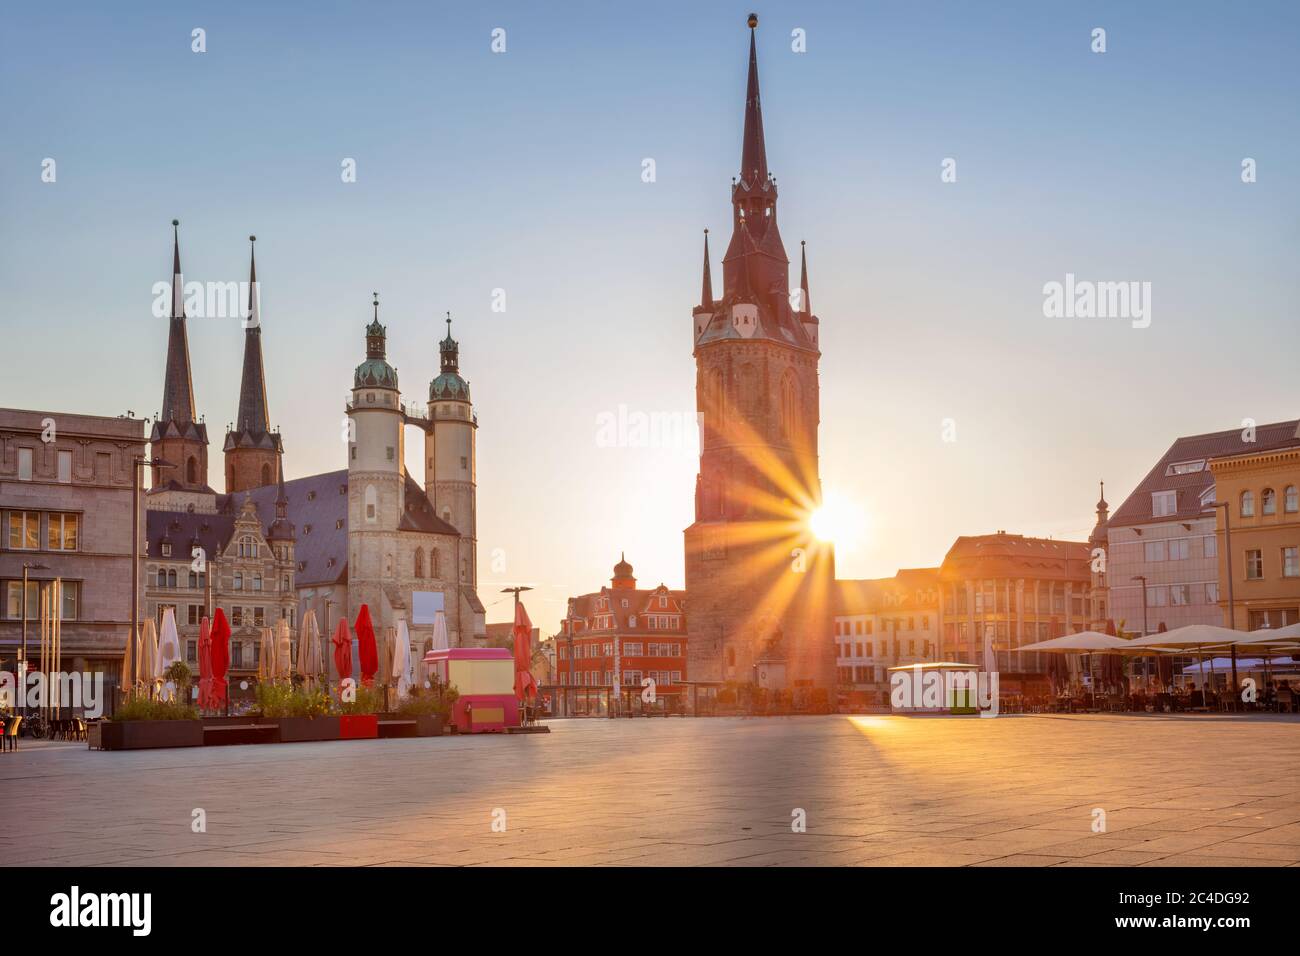 Halle, Germania. Immagine del centro storico di Halle (Saale) con la Torre Rossa e il mercato durante il bellissimo tramonto estivo. Foto Stock